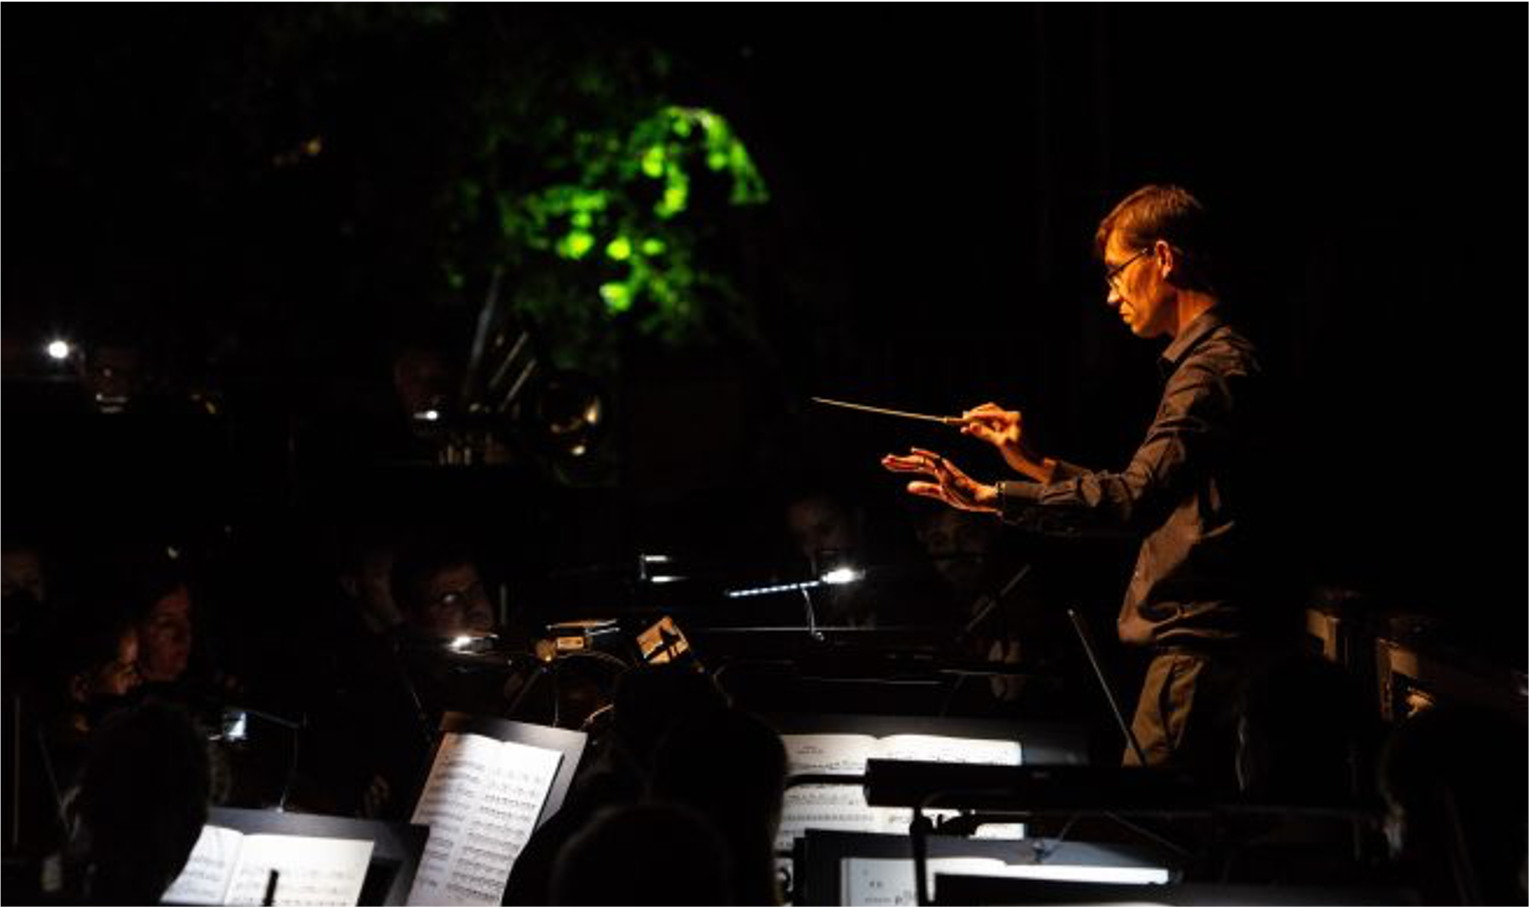  Matthew conducting Verdi’s La traviata. Credit, Ali Wright 